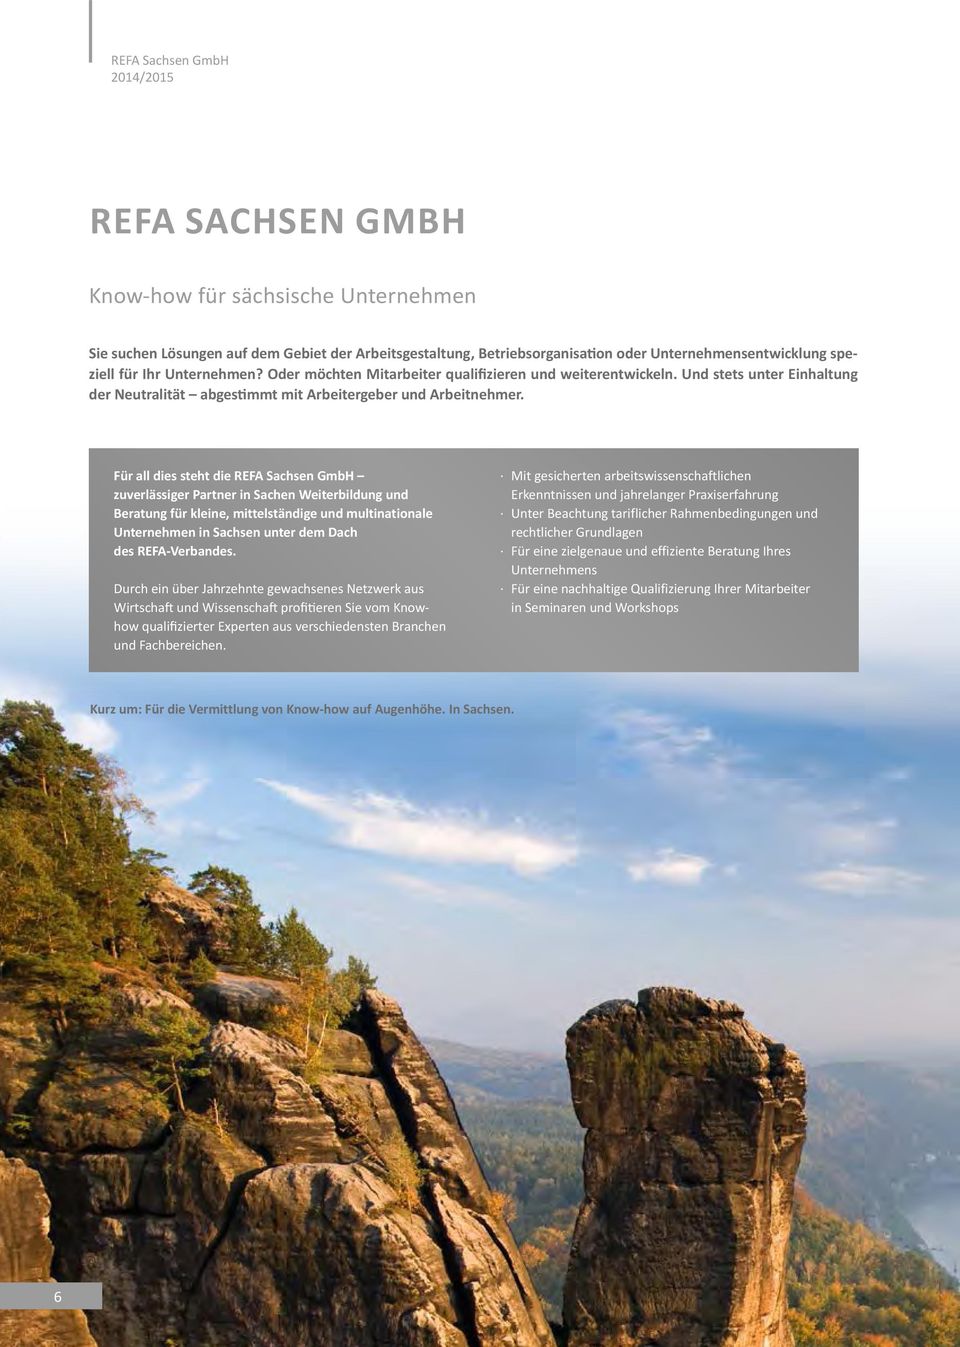 Für all dies steht die REFA Sachsen GmbH zuverlässiger Partner in Sachen Weiterbildung und Beratung für kleine, mittelständige und multinationale Unternehmen in Sachsen unter dem Dach des